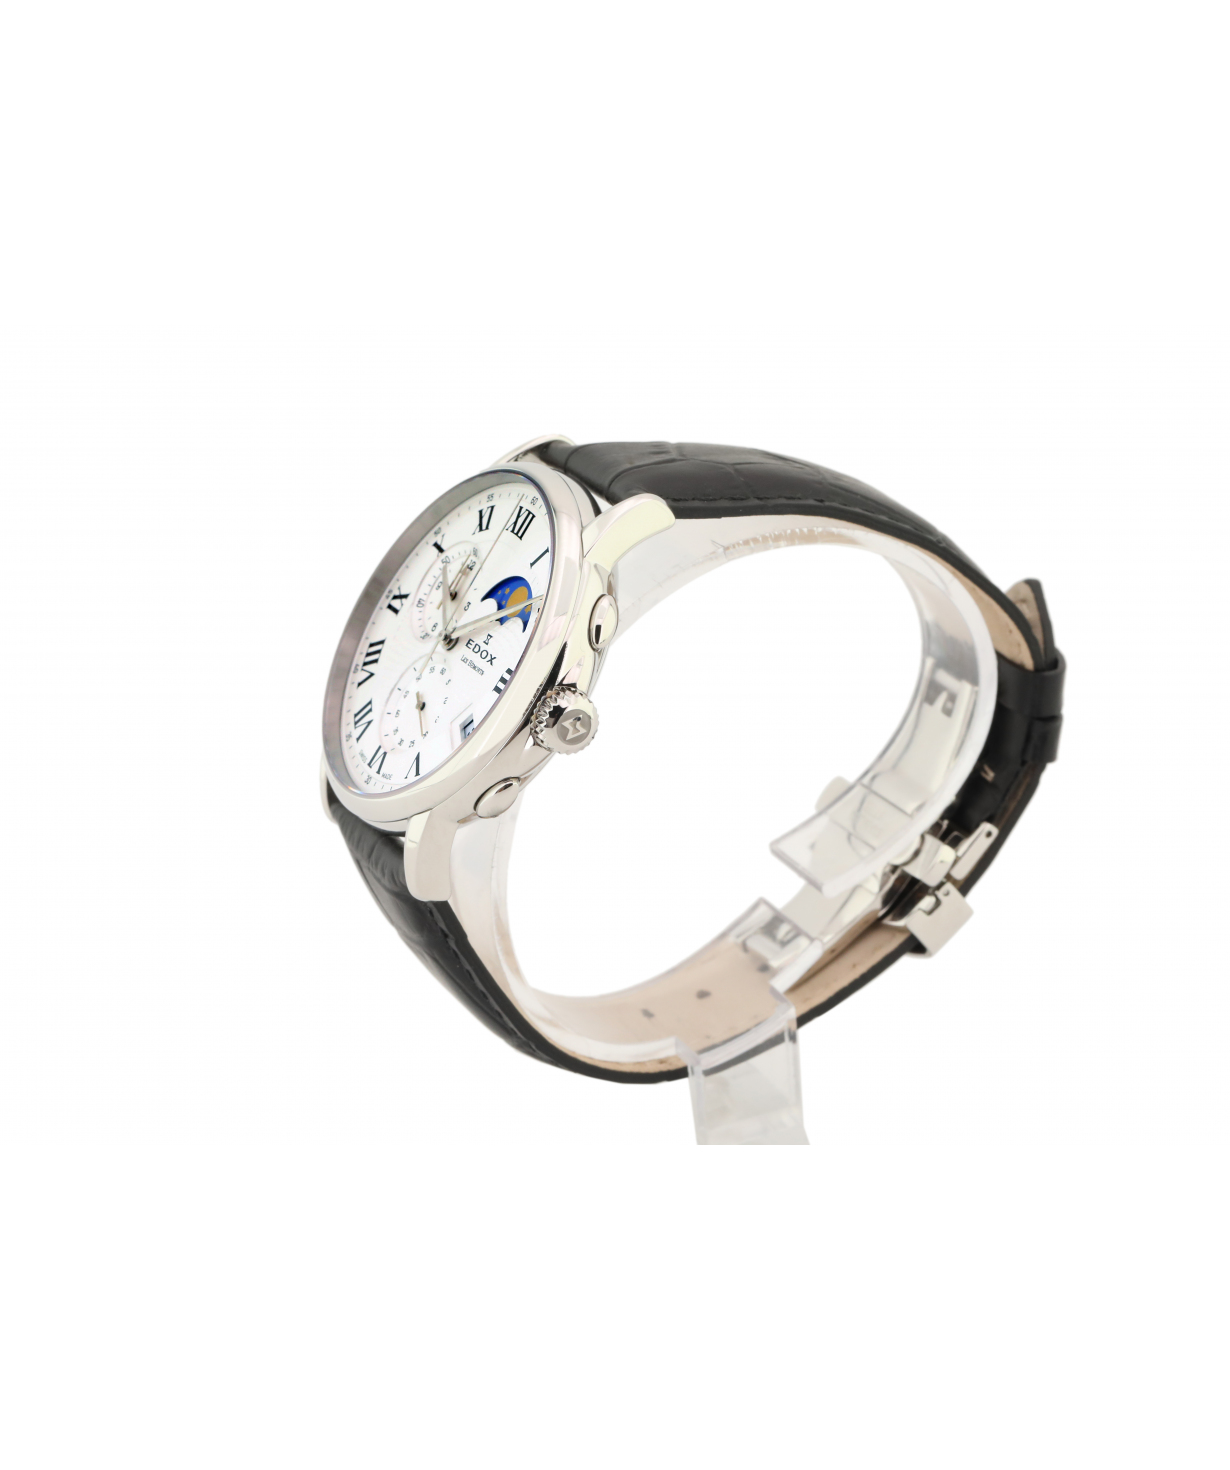 Wristwatch  `Edox`   01651 3 AR